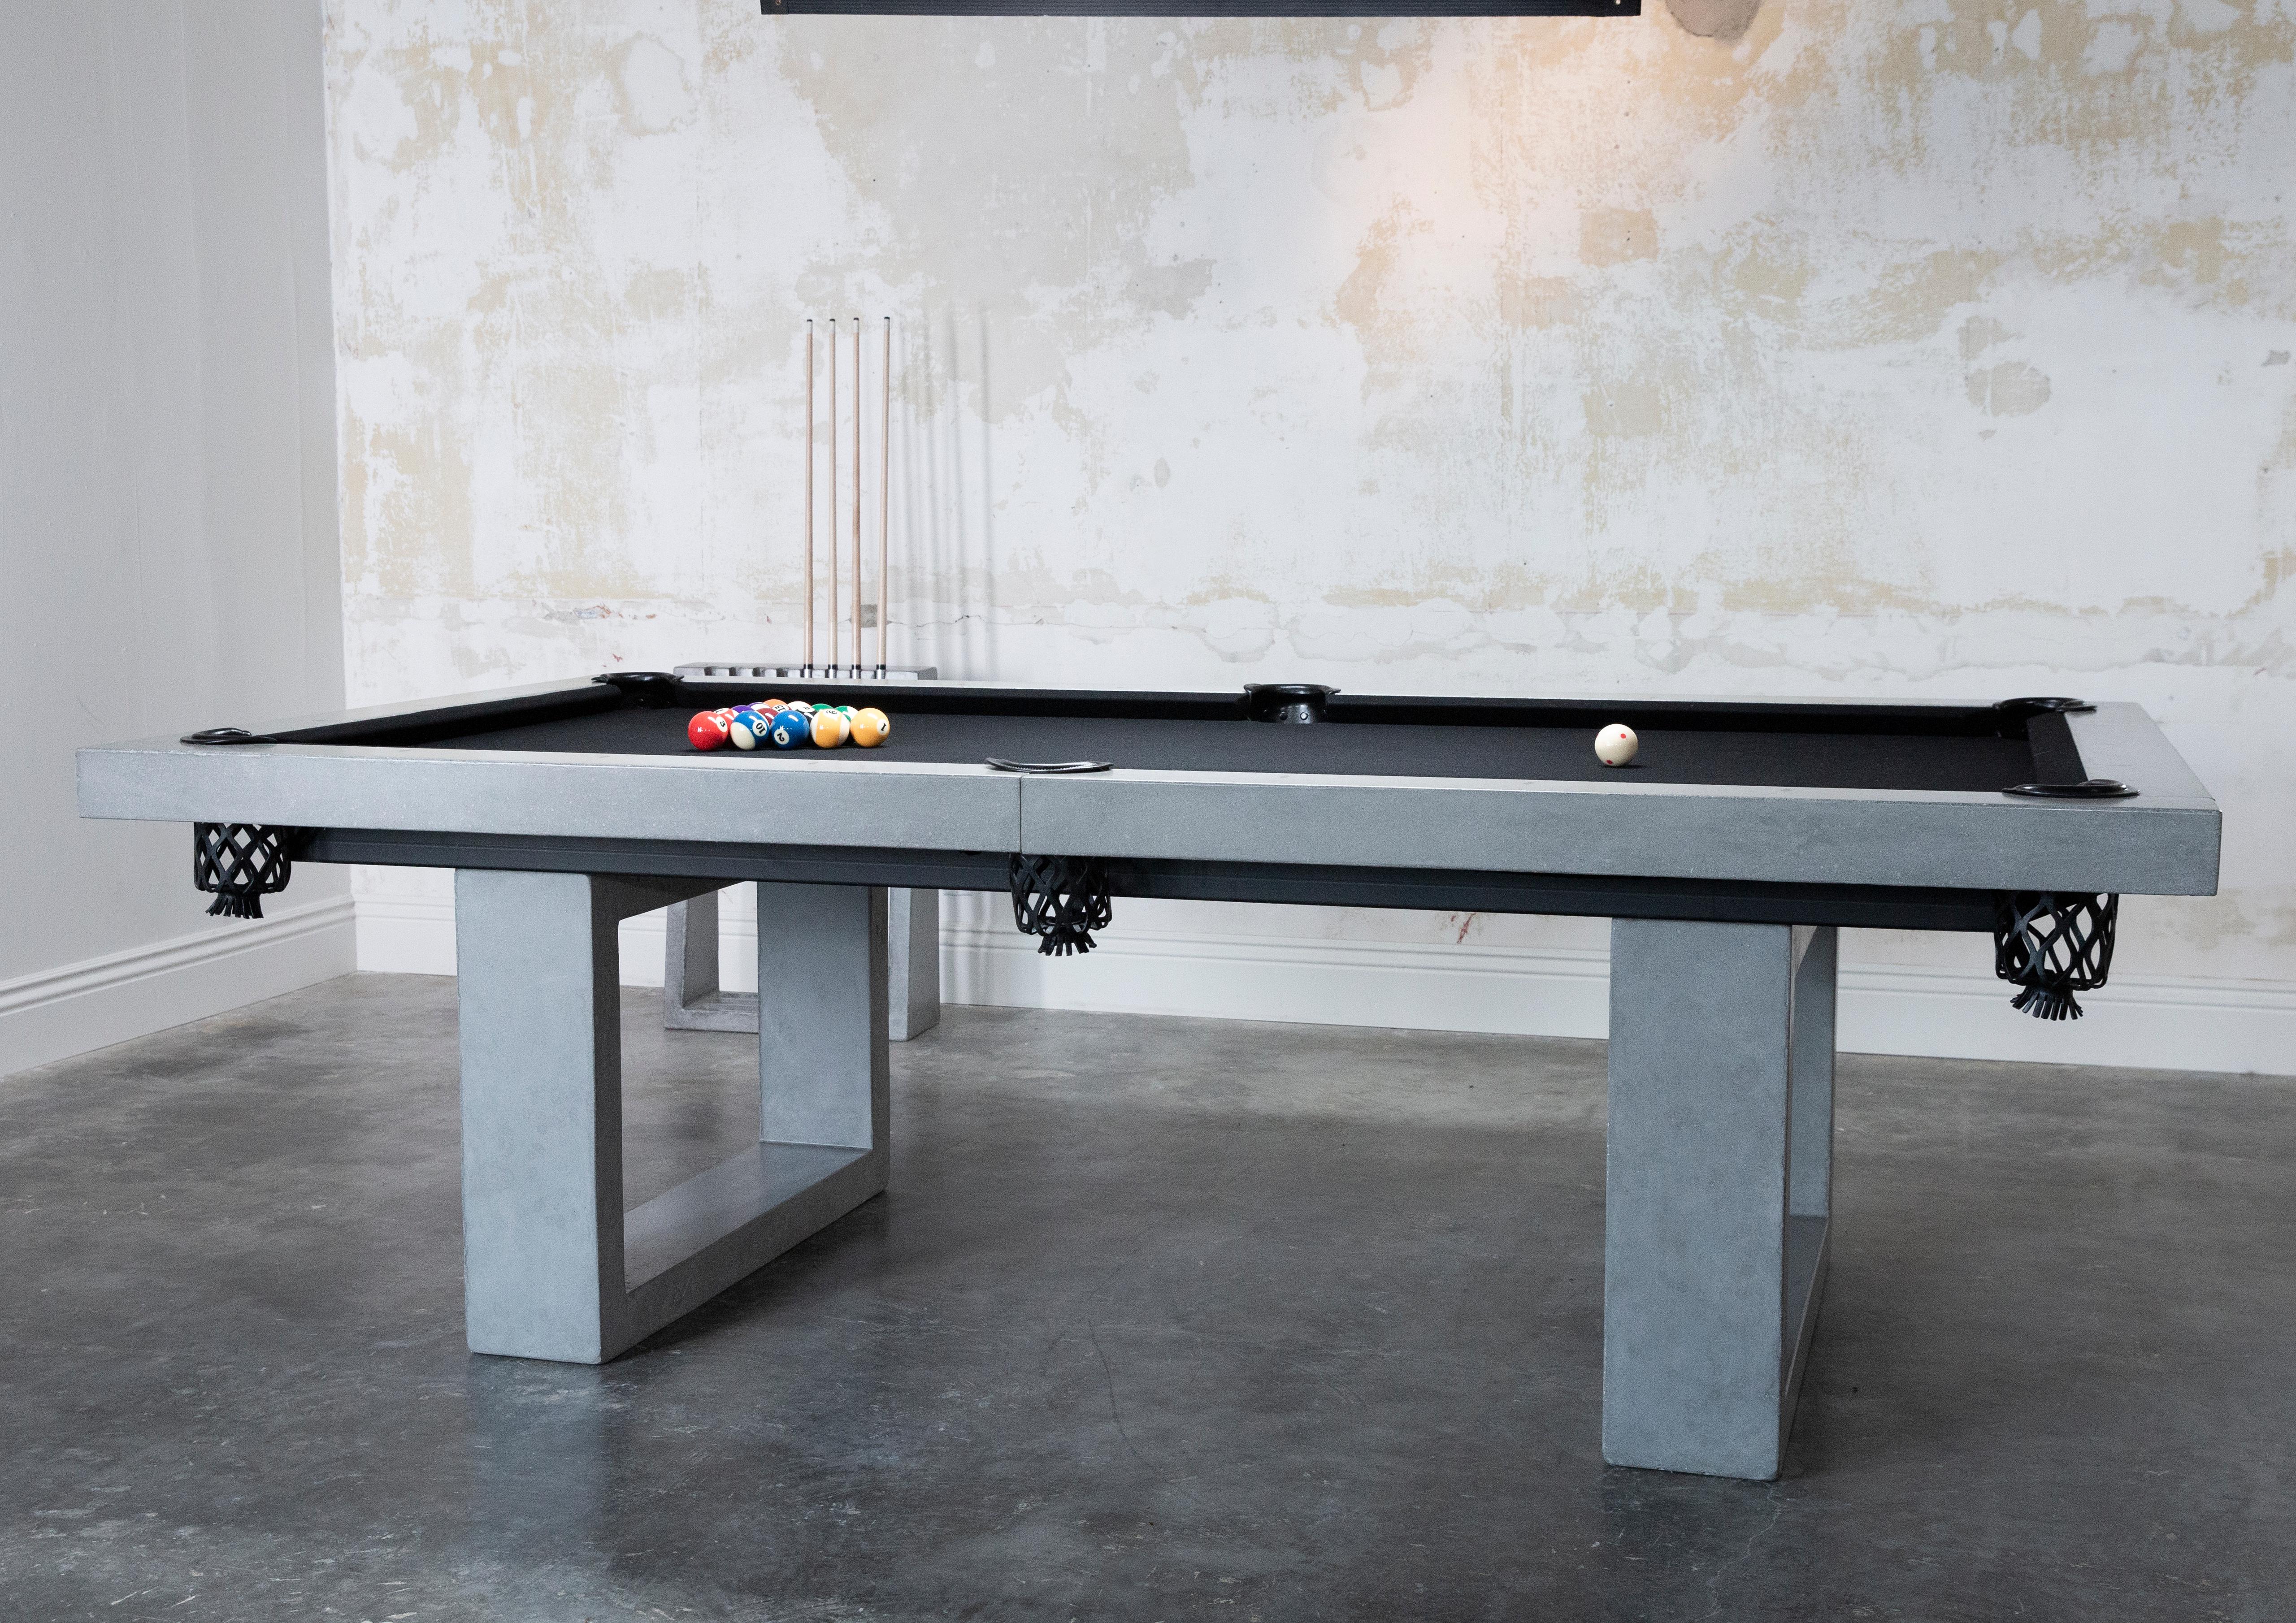 Der klassische James de Wulf Beton-Billardtisch ist ein unverzichtbares Element in jedem Spielzimmer. Der Tisch in Regelgröße besteht aus mit Kohlefaser verstärktem Beton. Er verfügt über eine glatte, hochleistungsfähige Oberfläche, die mit